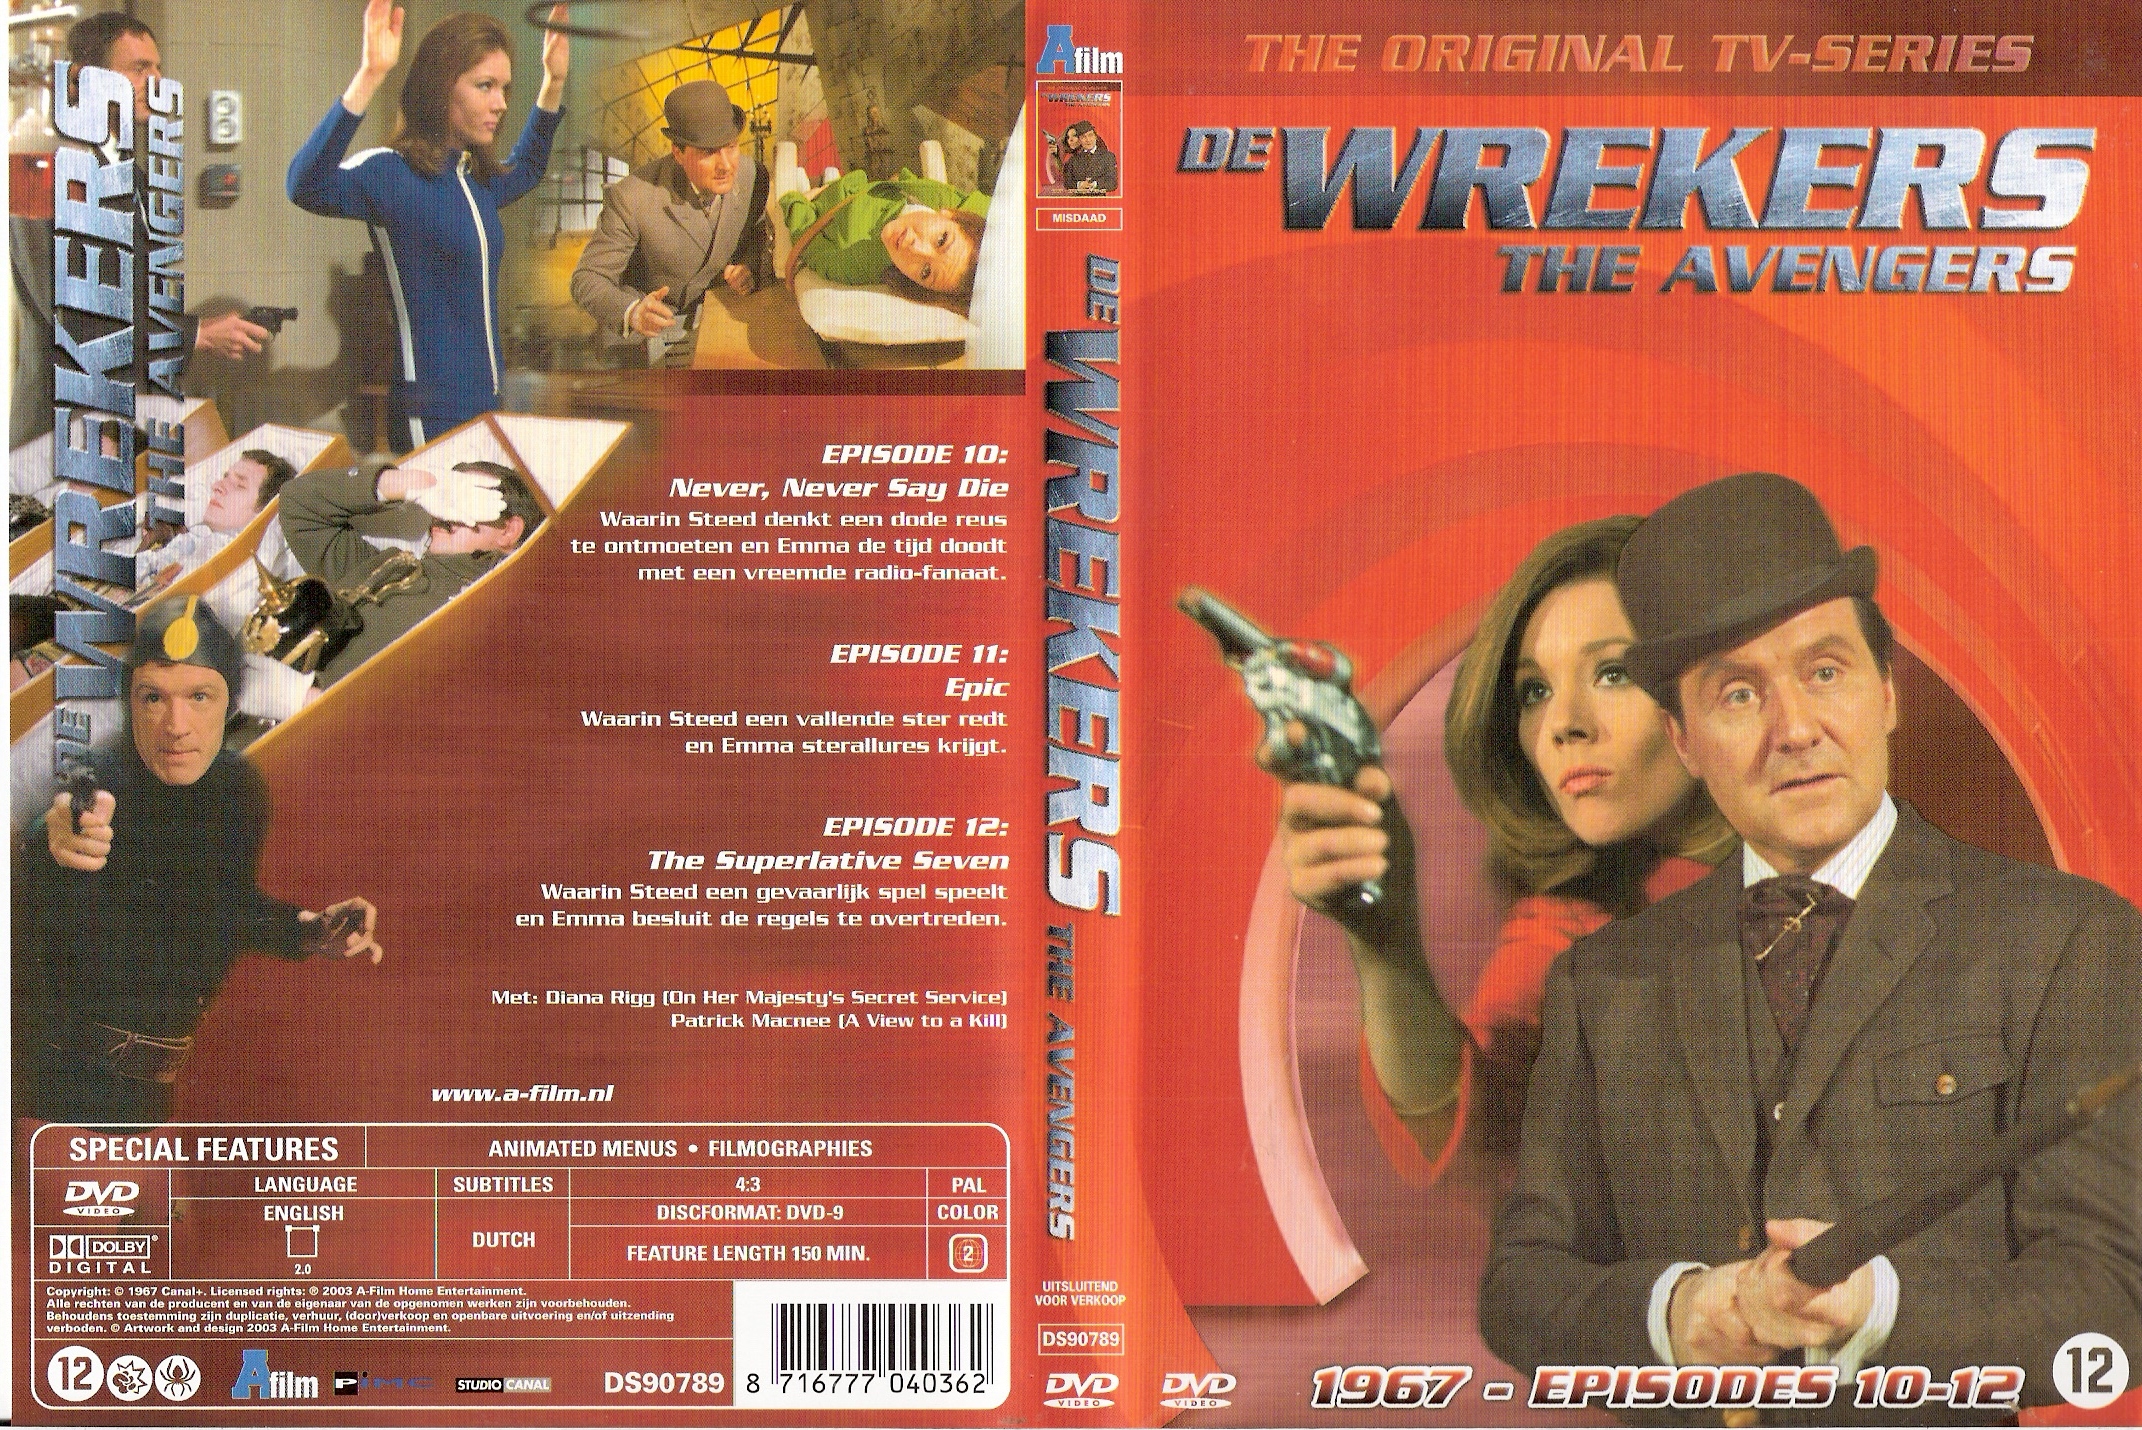 De Wrekers (The Avengers) 1967 - DvD 4